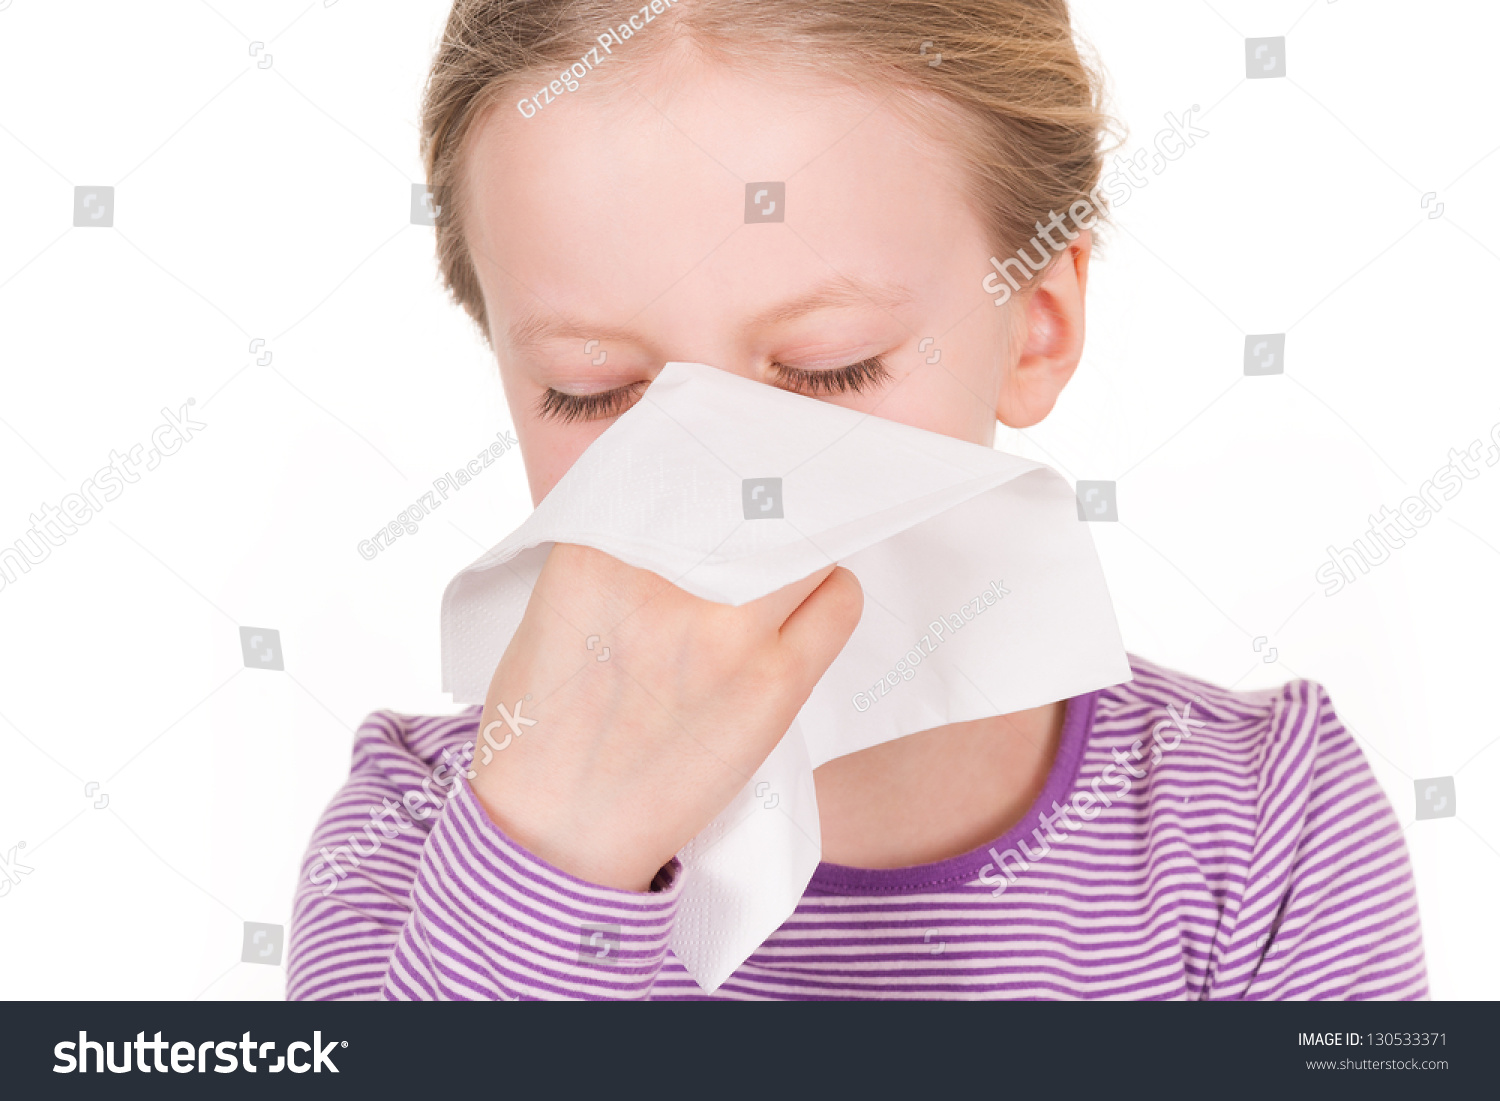 Истории болезни ринит. Апчхи аллергия. Язвы у девочек-подростков. У меня аллергия апчхи. About runny nose illness.